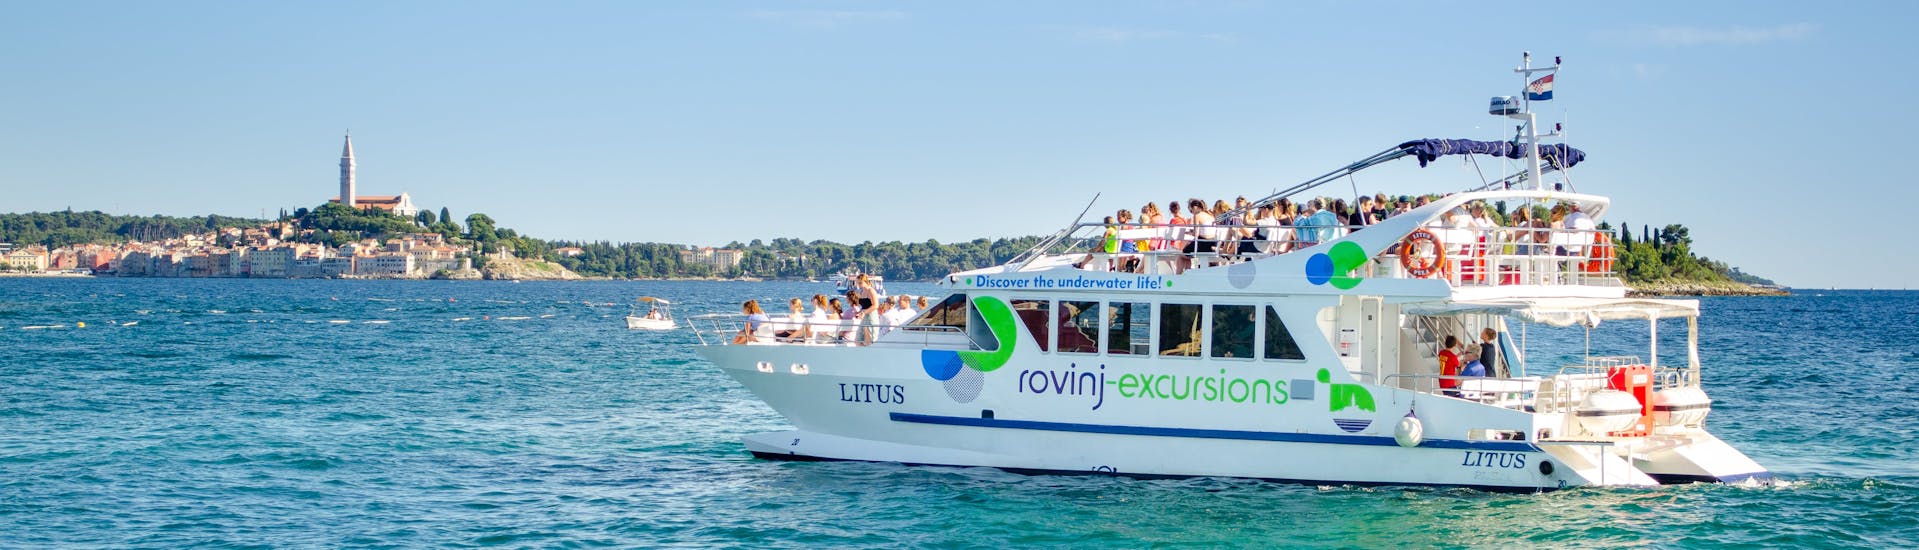 El catamarán LITUS en las aguas cristalinas de Istria durante la excursión en catamarán por Rovinj con parada para nadar con Rovinj Excursions.